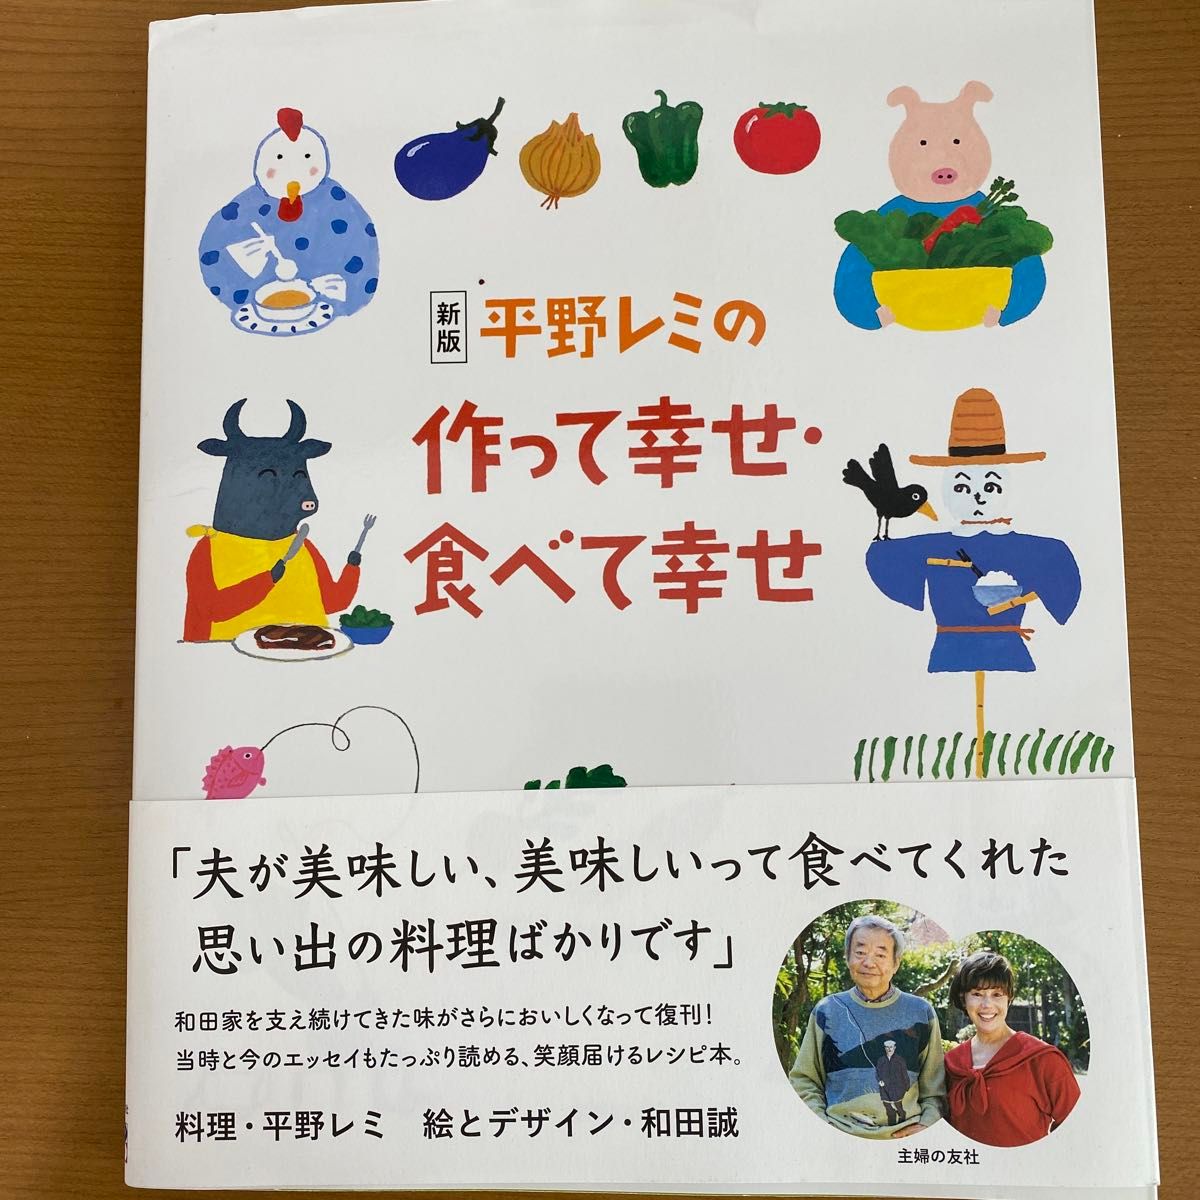 平野レミの作って幸せ・食べて幸せ （新版） 平野レミ／料理　和田誠／絵とデザイン